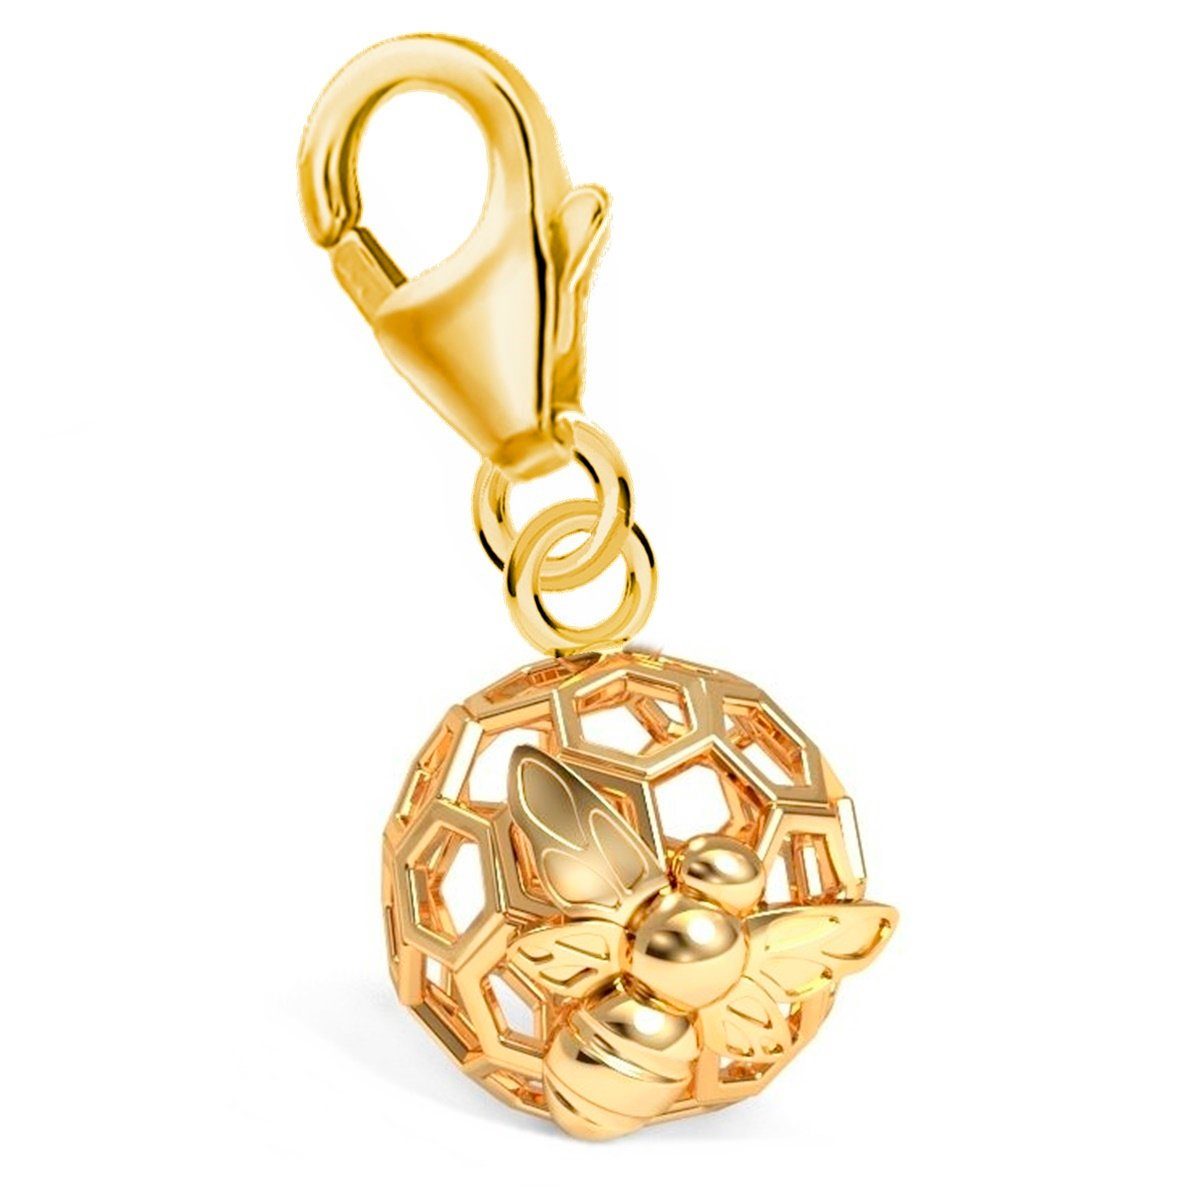 Goldene Hufeisen Charm-Einhänger Vergoldet Gliederarmband Halskette Biene für Anhänger Silber Honigwabe (inkl. 925 Karabiner Etui), oder Charm mit